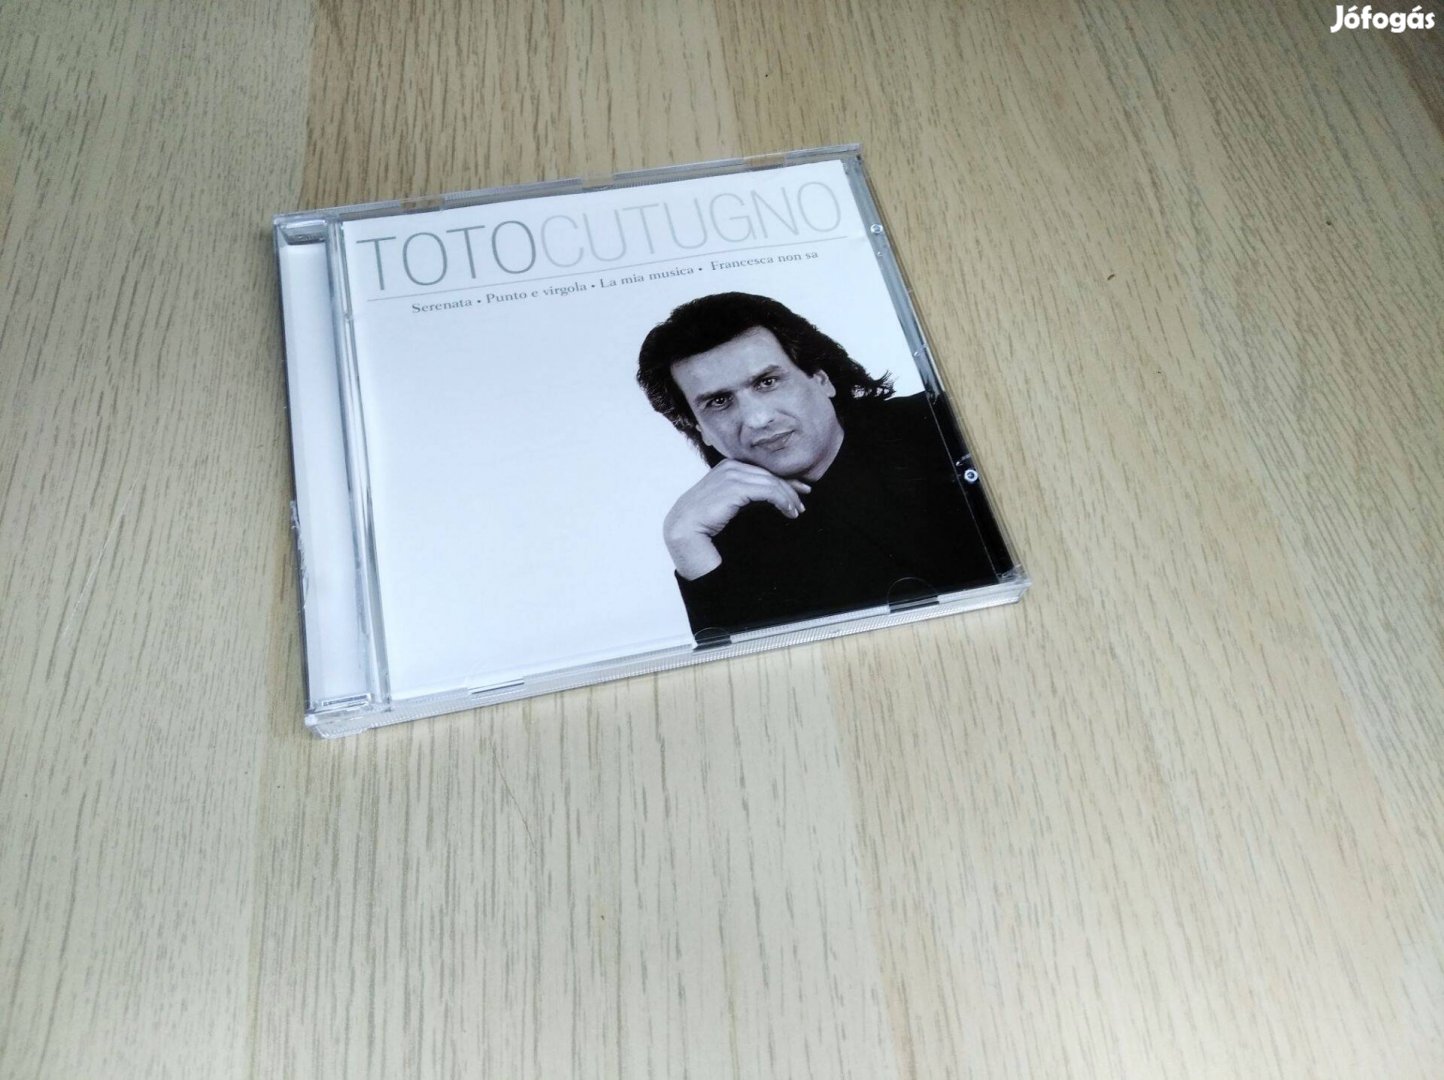 Toto Cutugno - Toto Cutugno / CD